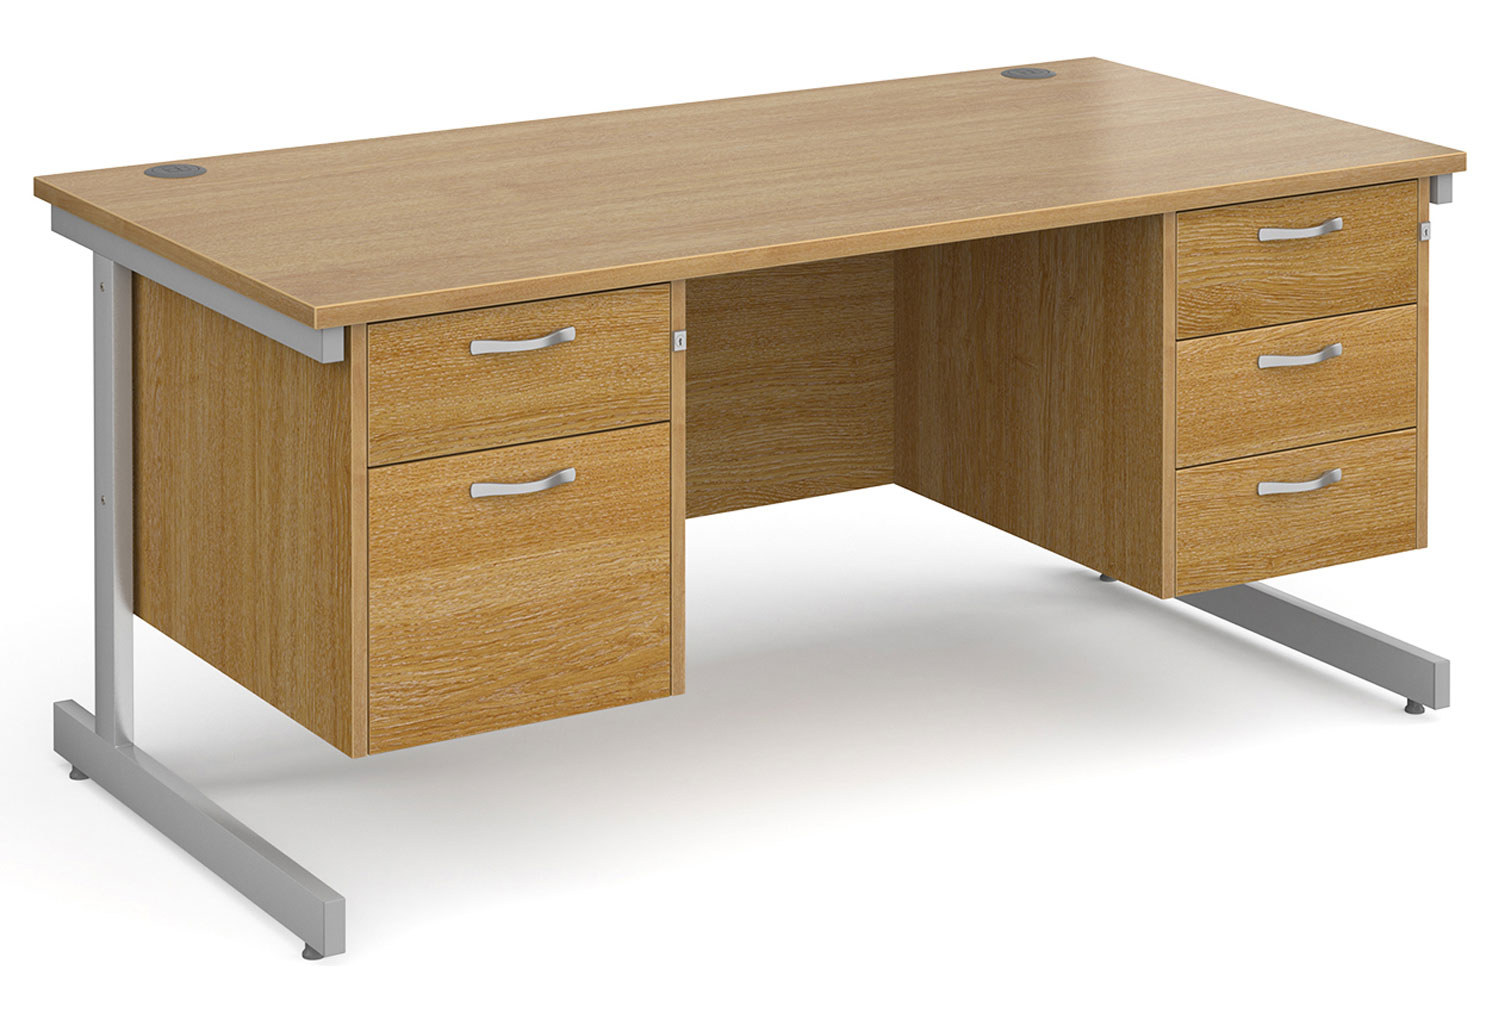 All Oak C-Leg Executive Office Desk 2+3 Drawers, 160wx80dx73h (cm)